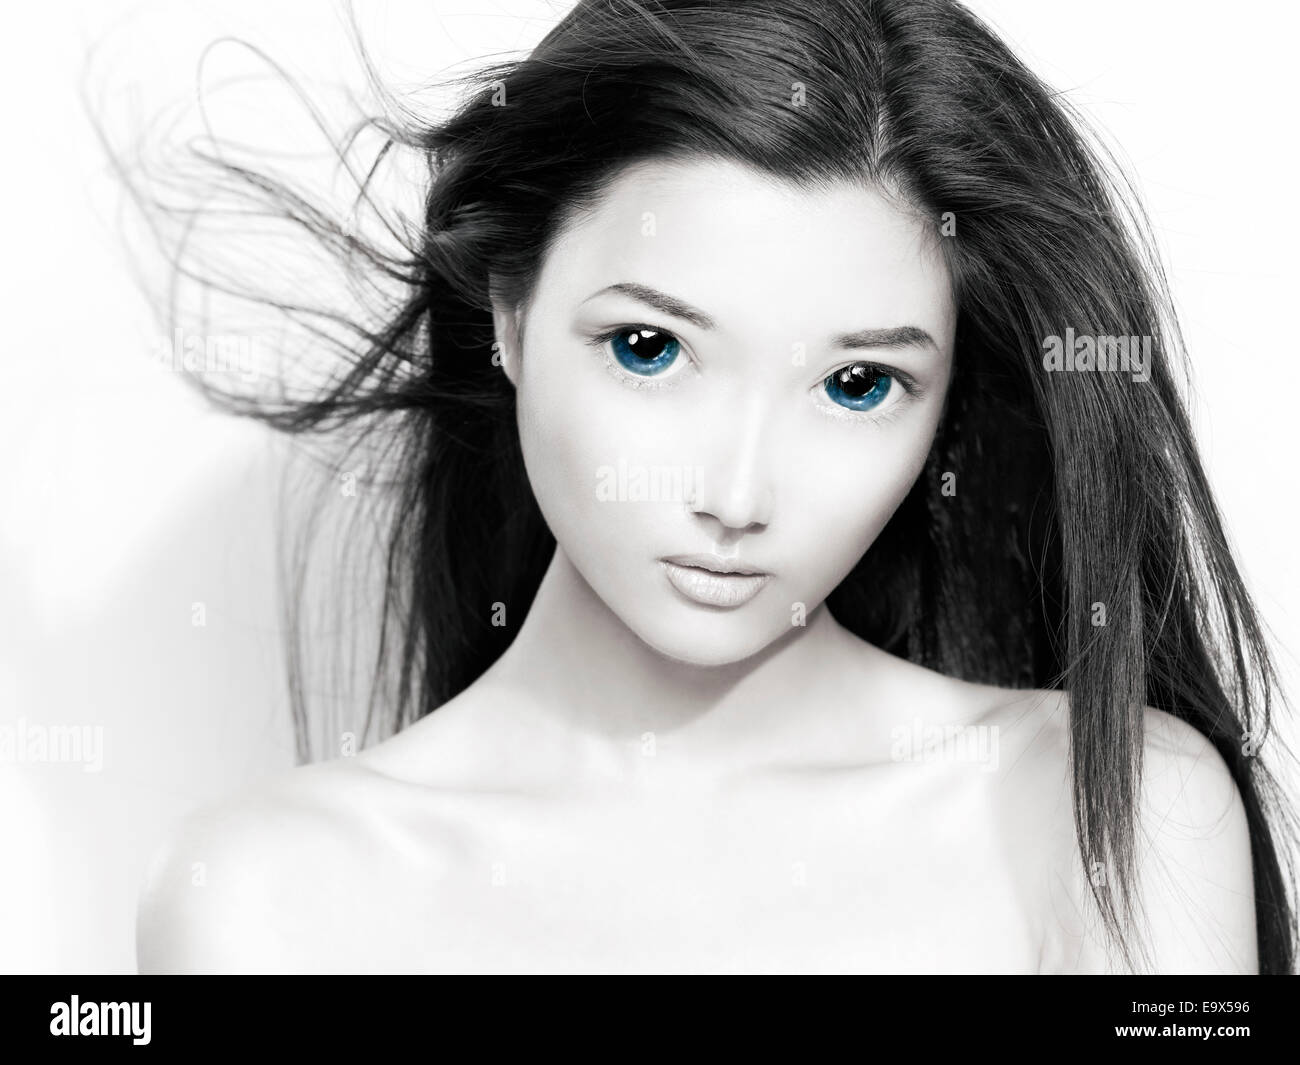 Portrait of a cute jeune japonaise face anime avec de grands yeux bleus et les cheveux volant. Noir et blanc avec la couleur bleue. Banque D'Images